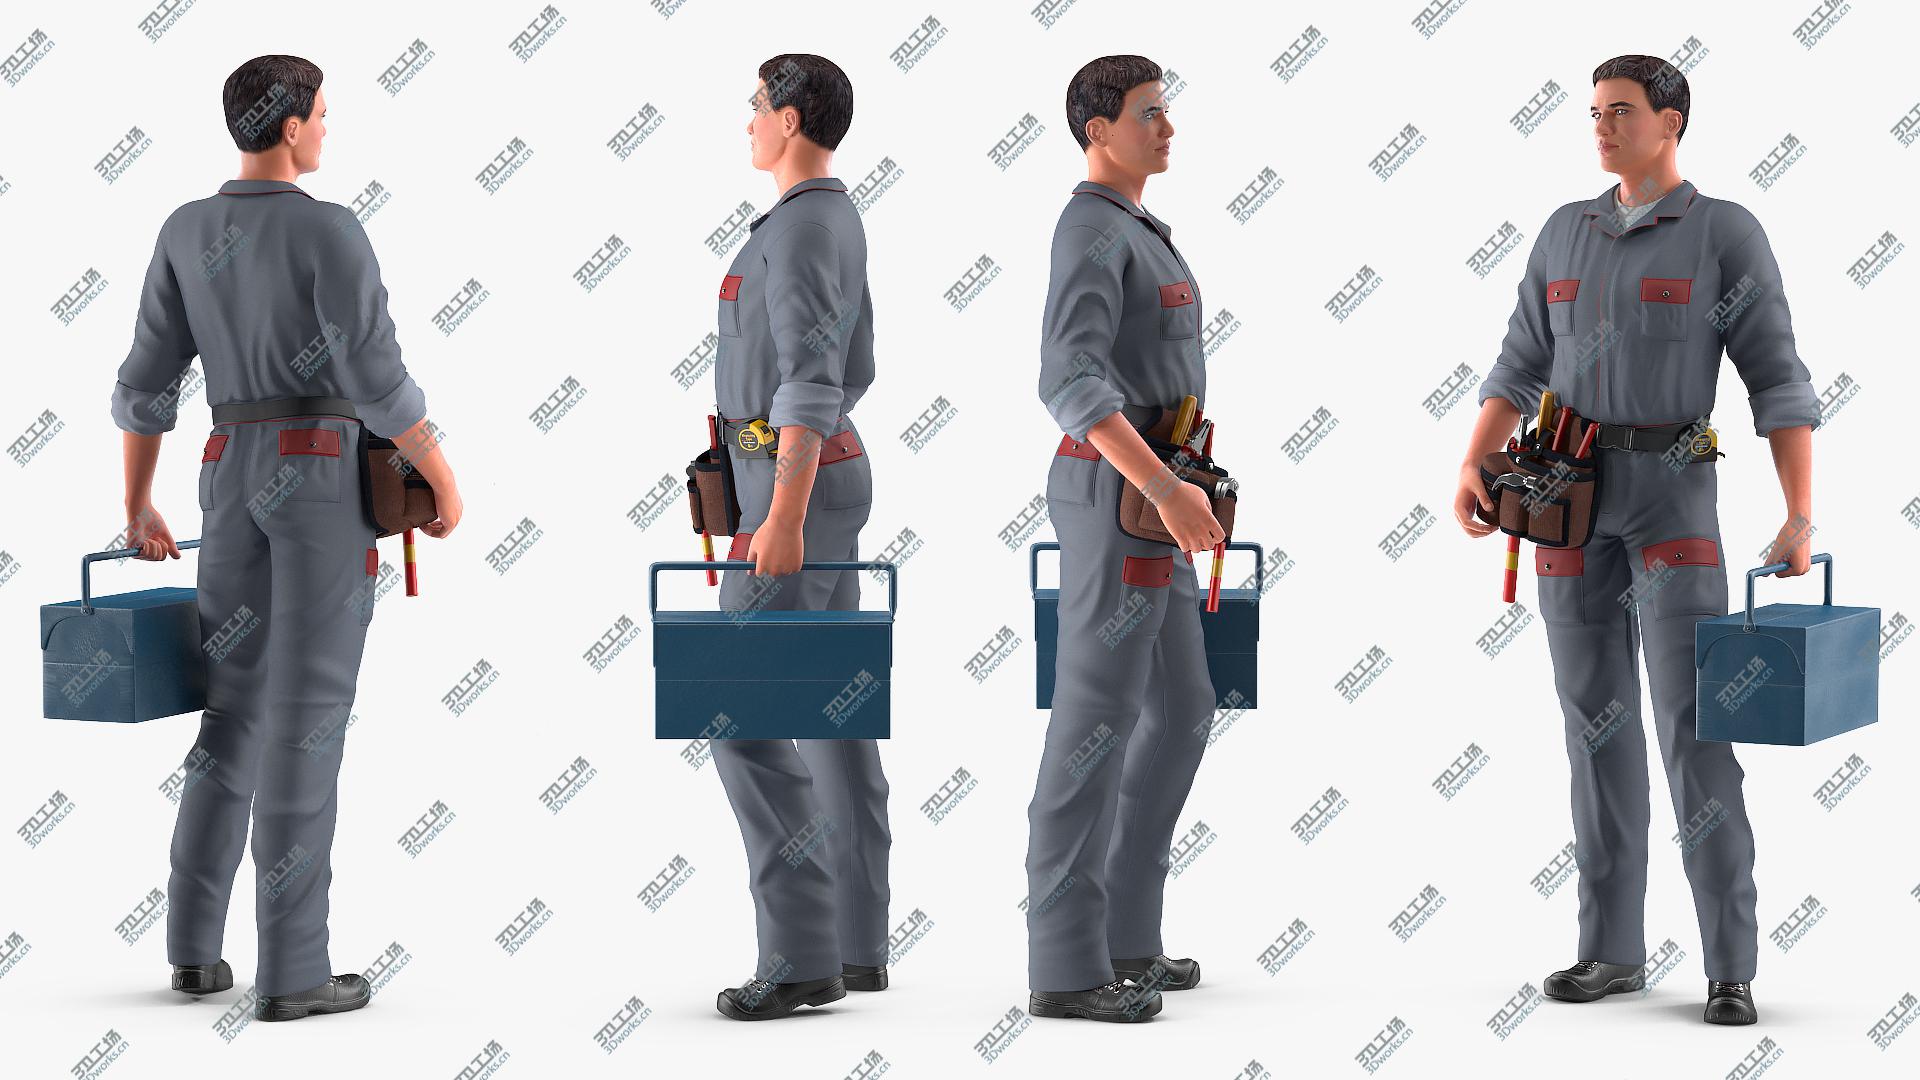 images/goods_img/202104093/Locksmith Standing Pose 3D model/3.jpg